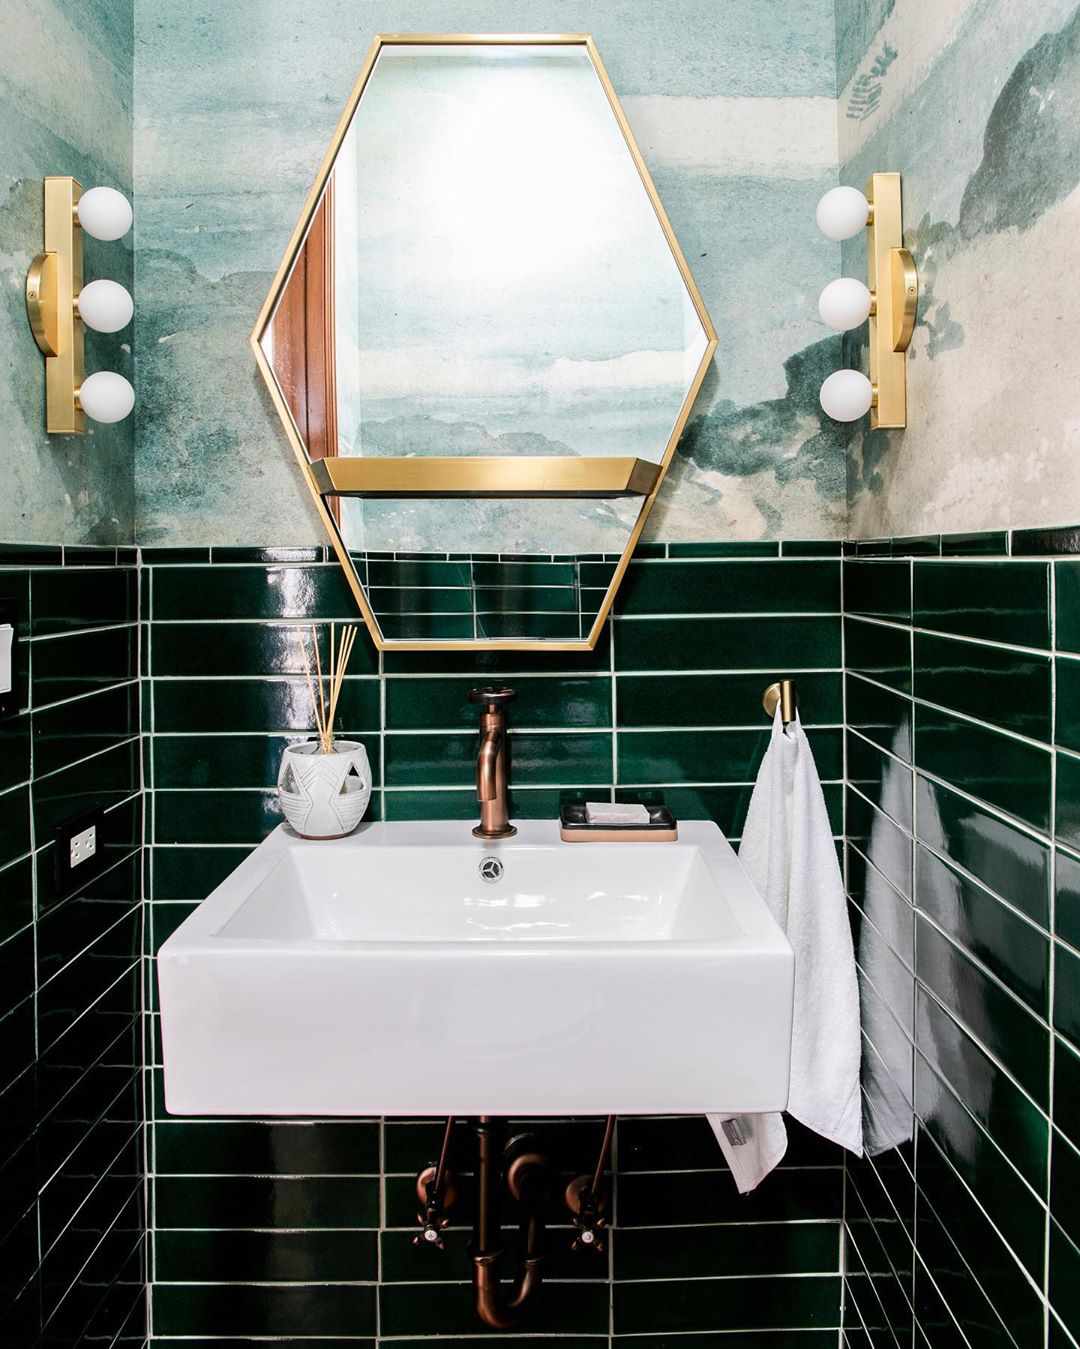 Dunkelgrüne Fliesen und Tapeten in einem Badezimmer